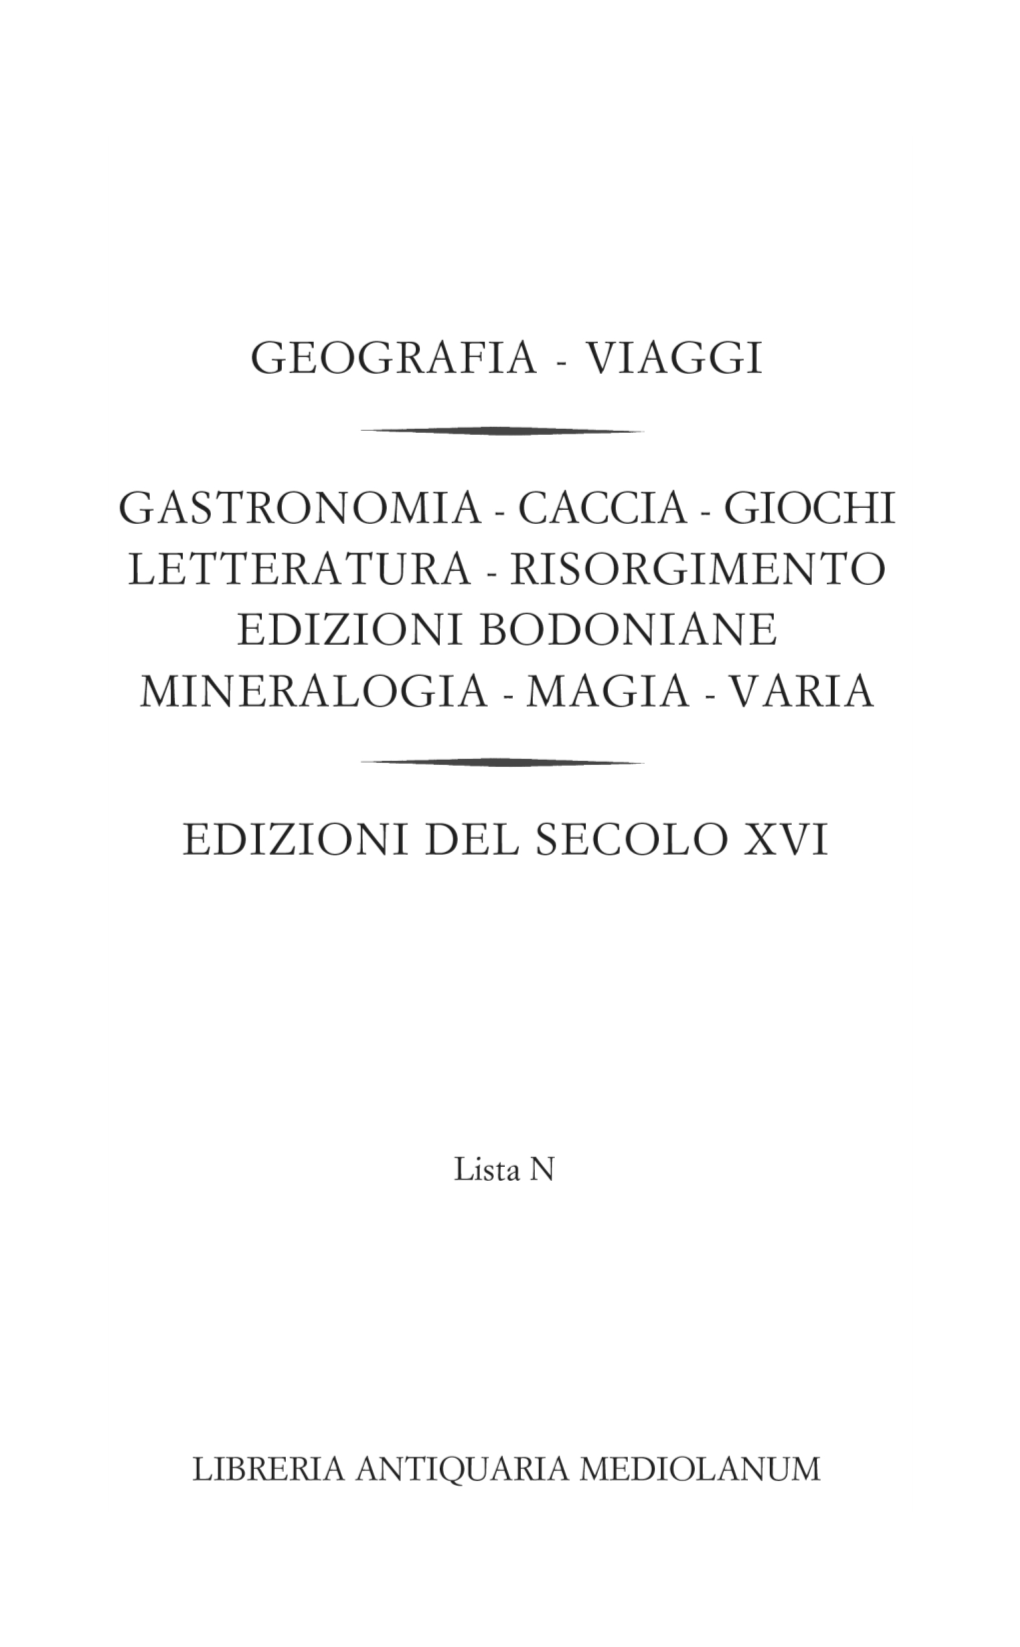 Catalogo Lista N: Viaggi, Varia, Edizioni Del Cinquecento